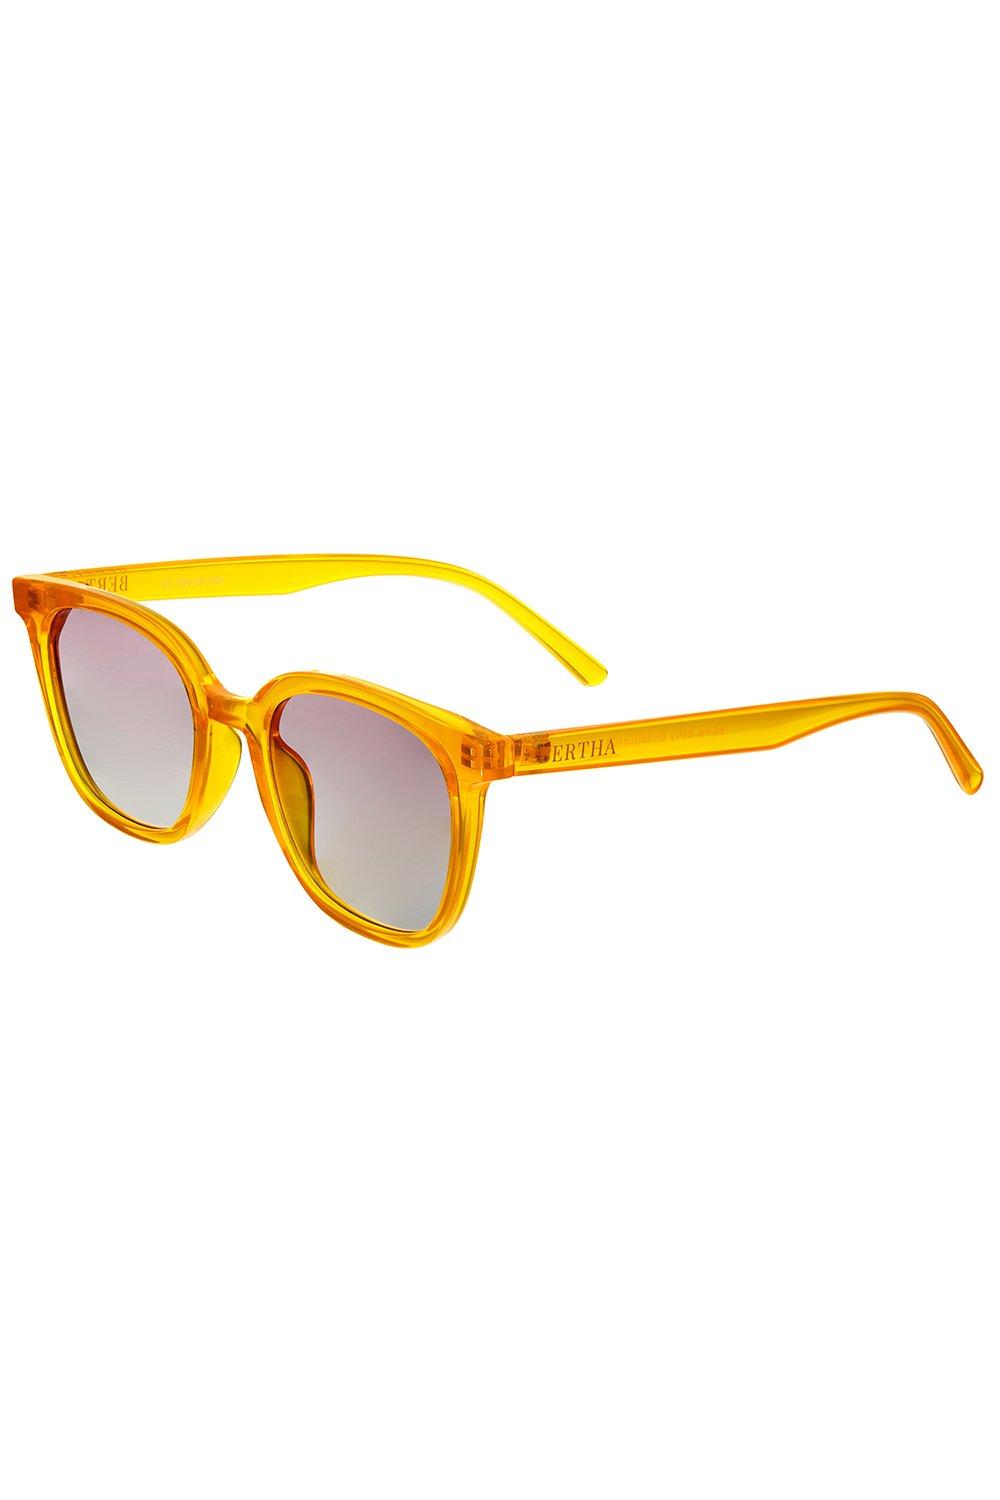 Поляризационные солнцезащитные очки Betty Bertha, мультиколор